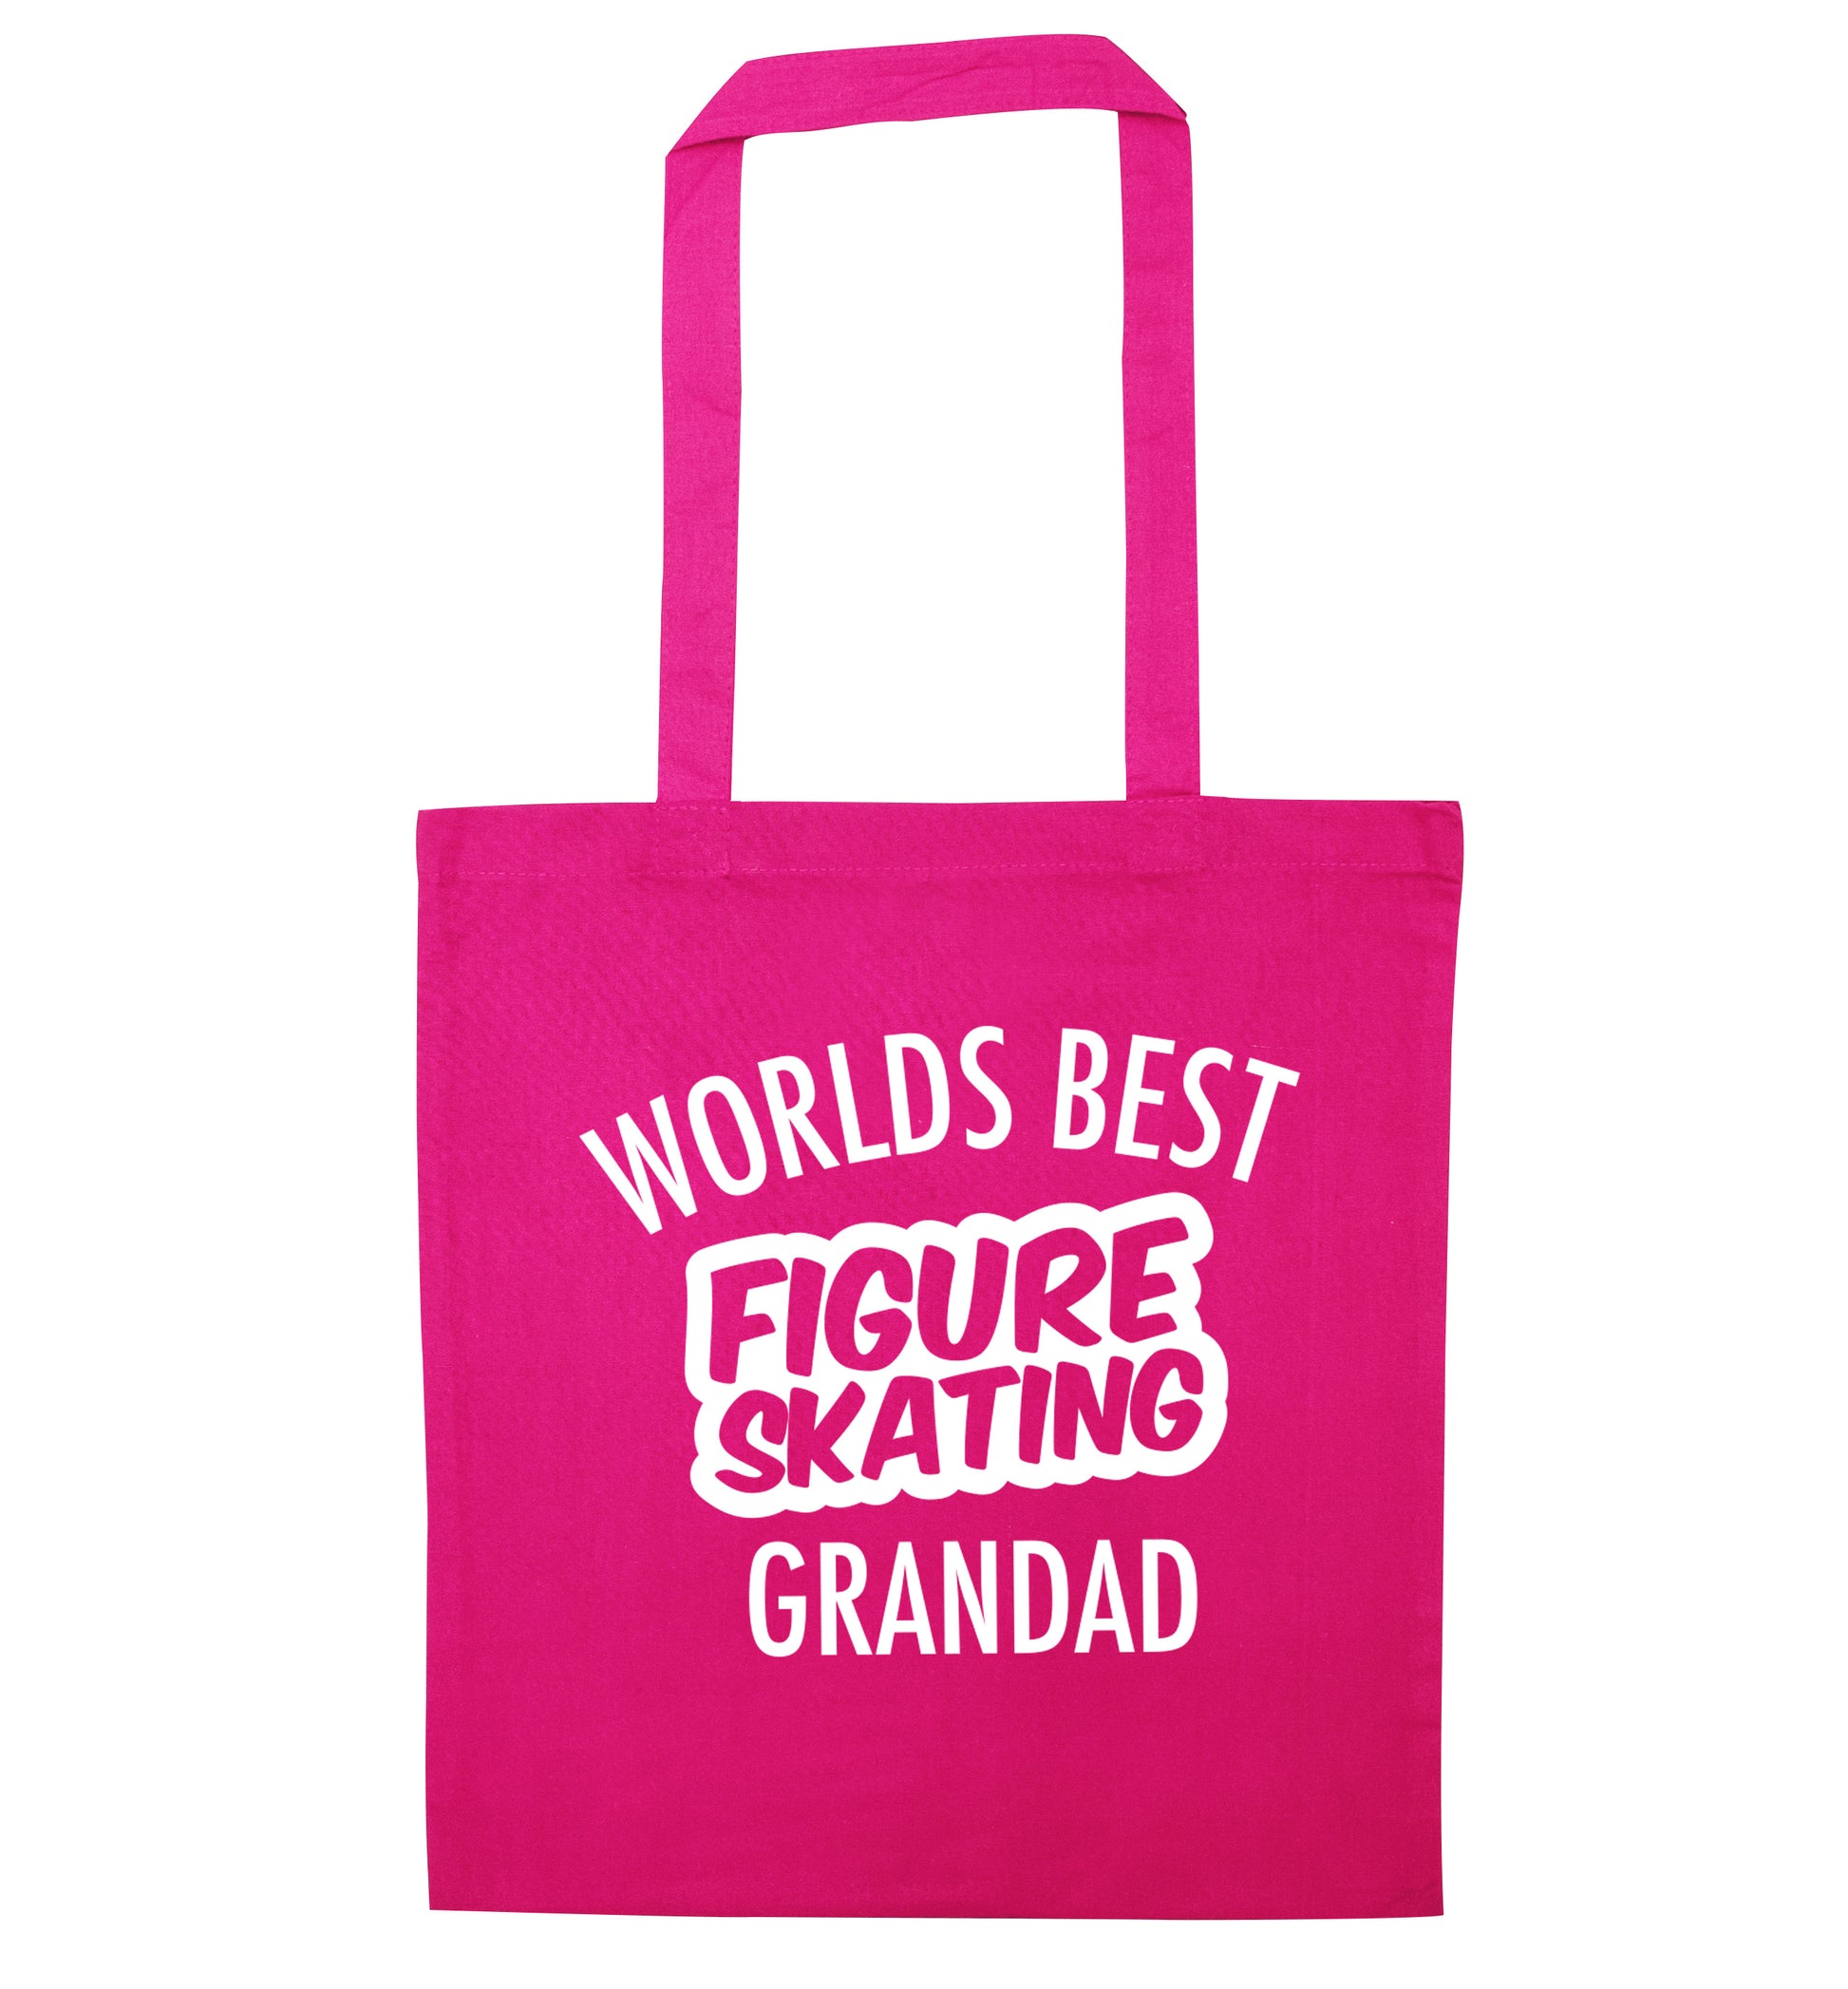 Worlds best figure skating grandad pink tote bag